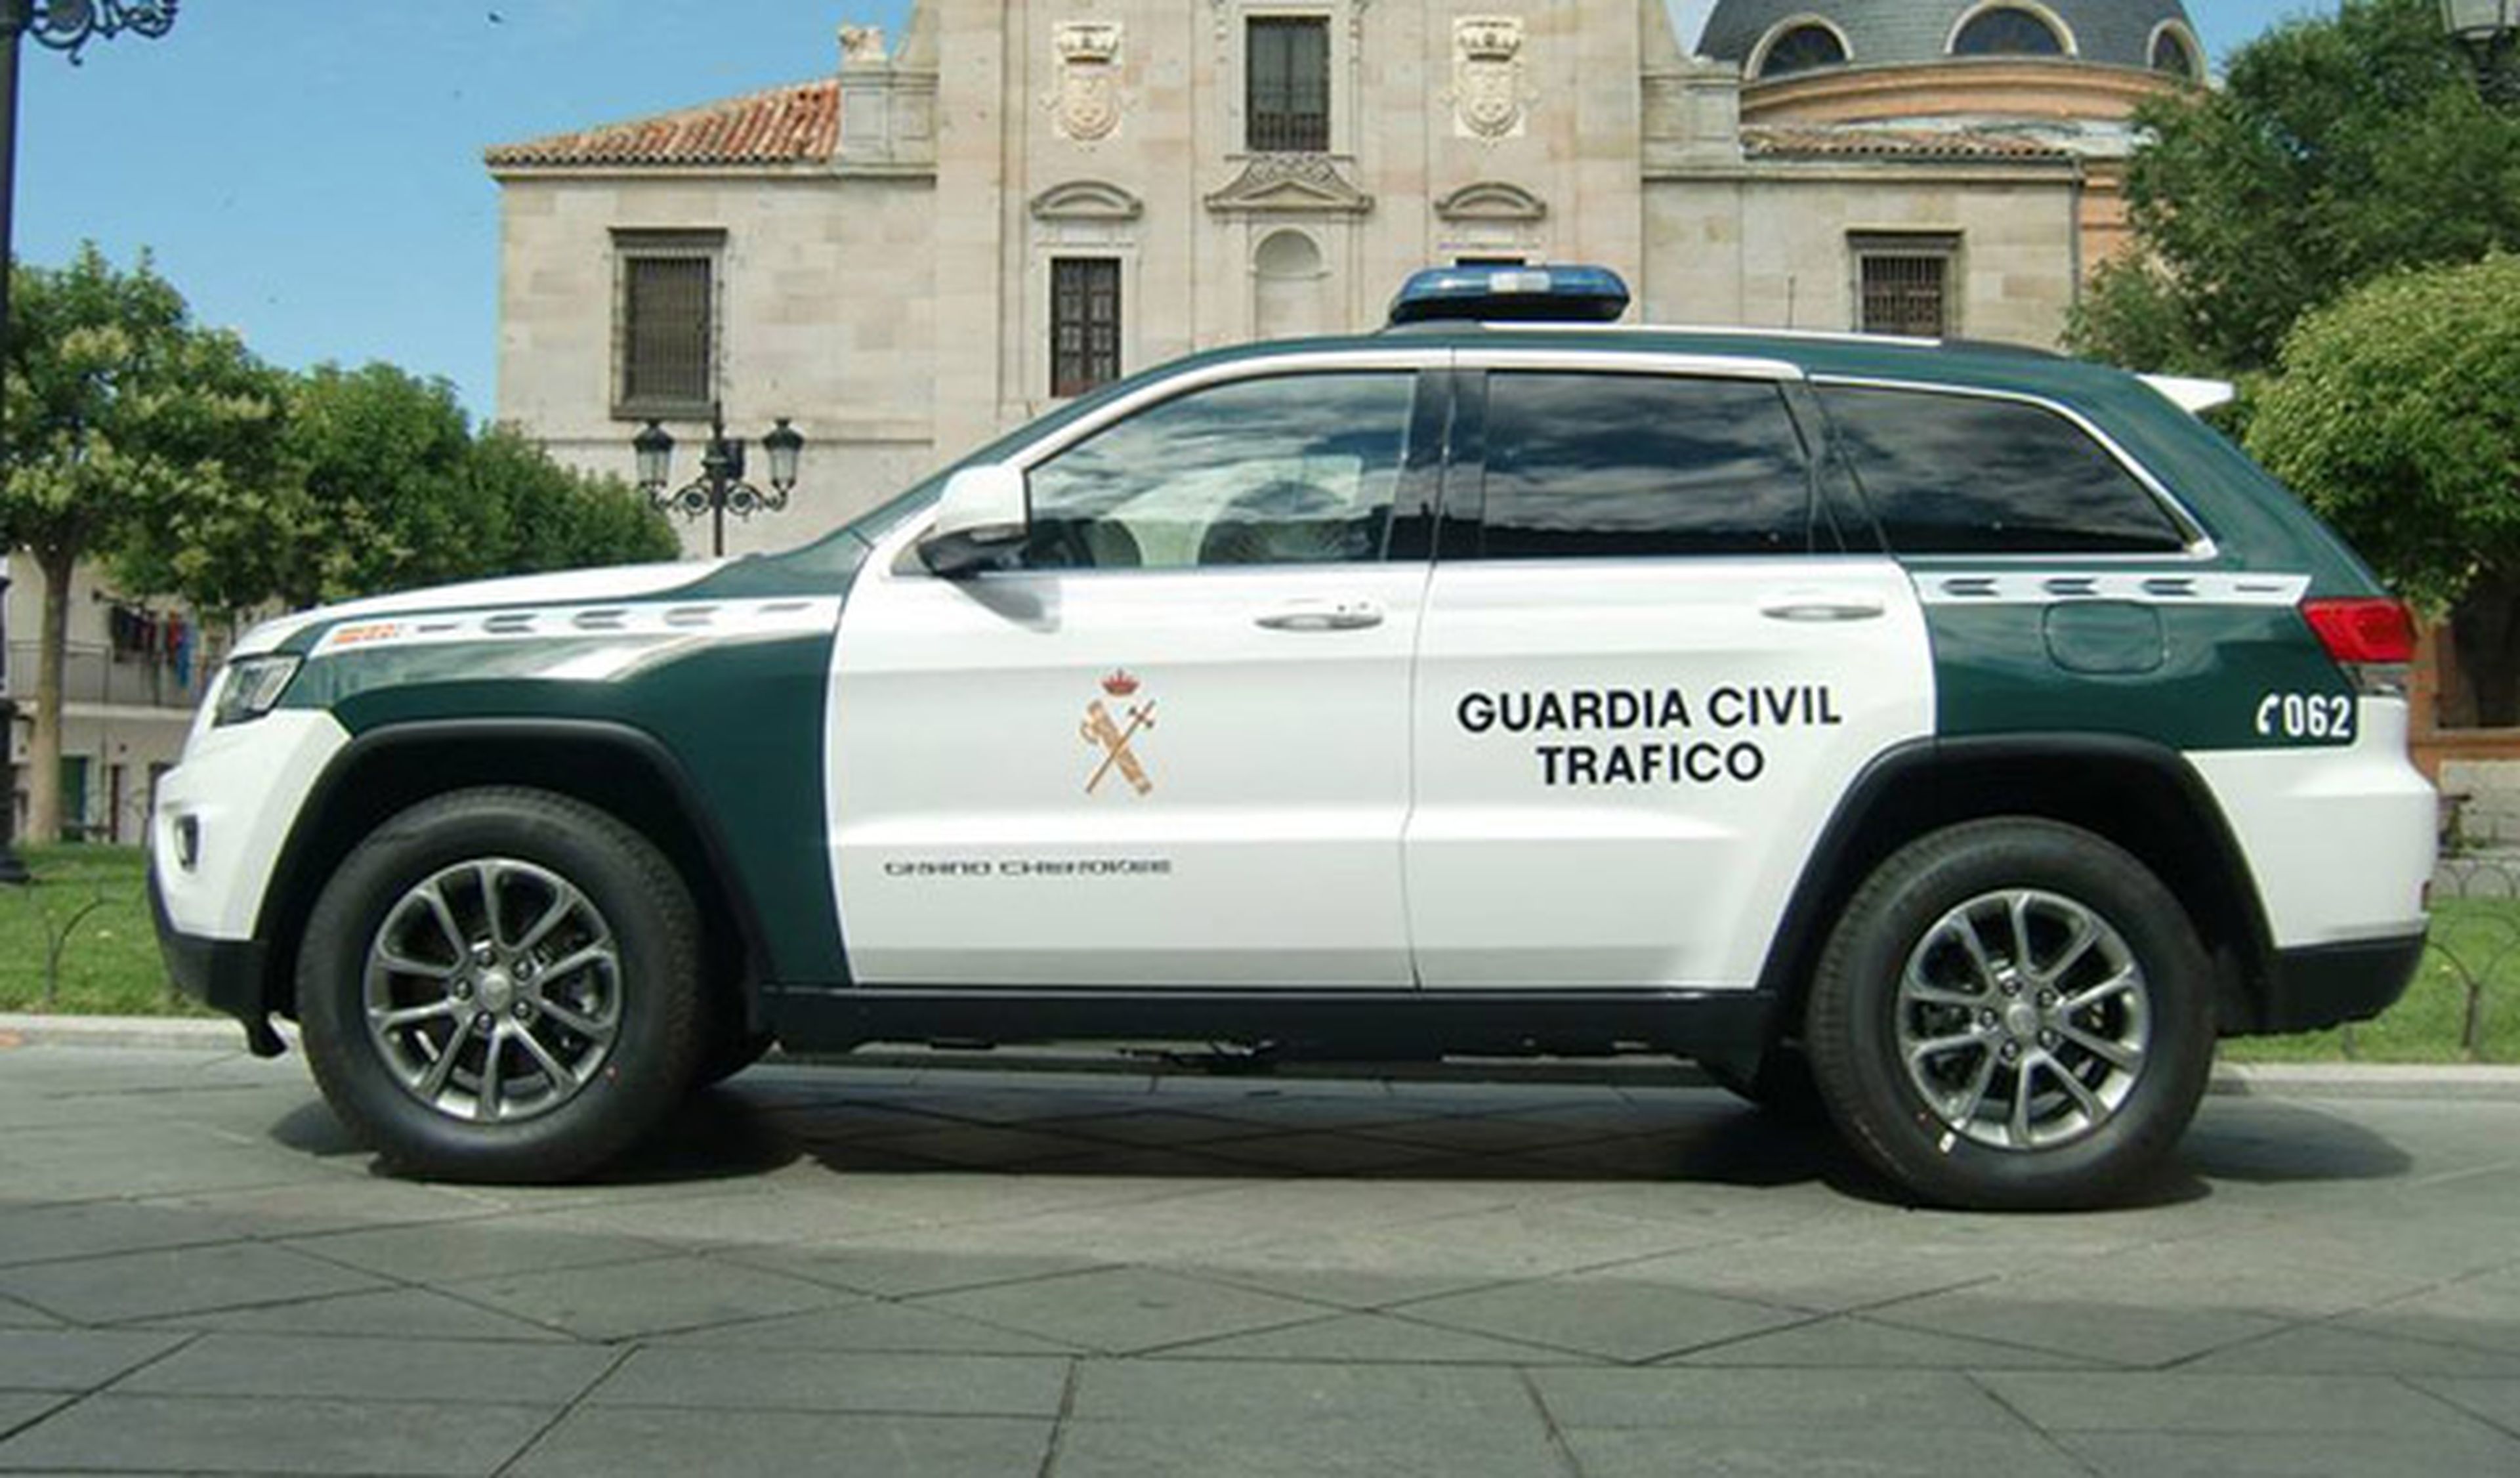 La Guardia Civil utilizará Jeep y furgonetas Fiat